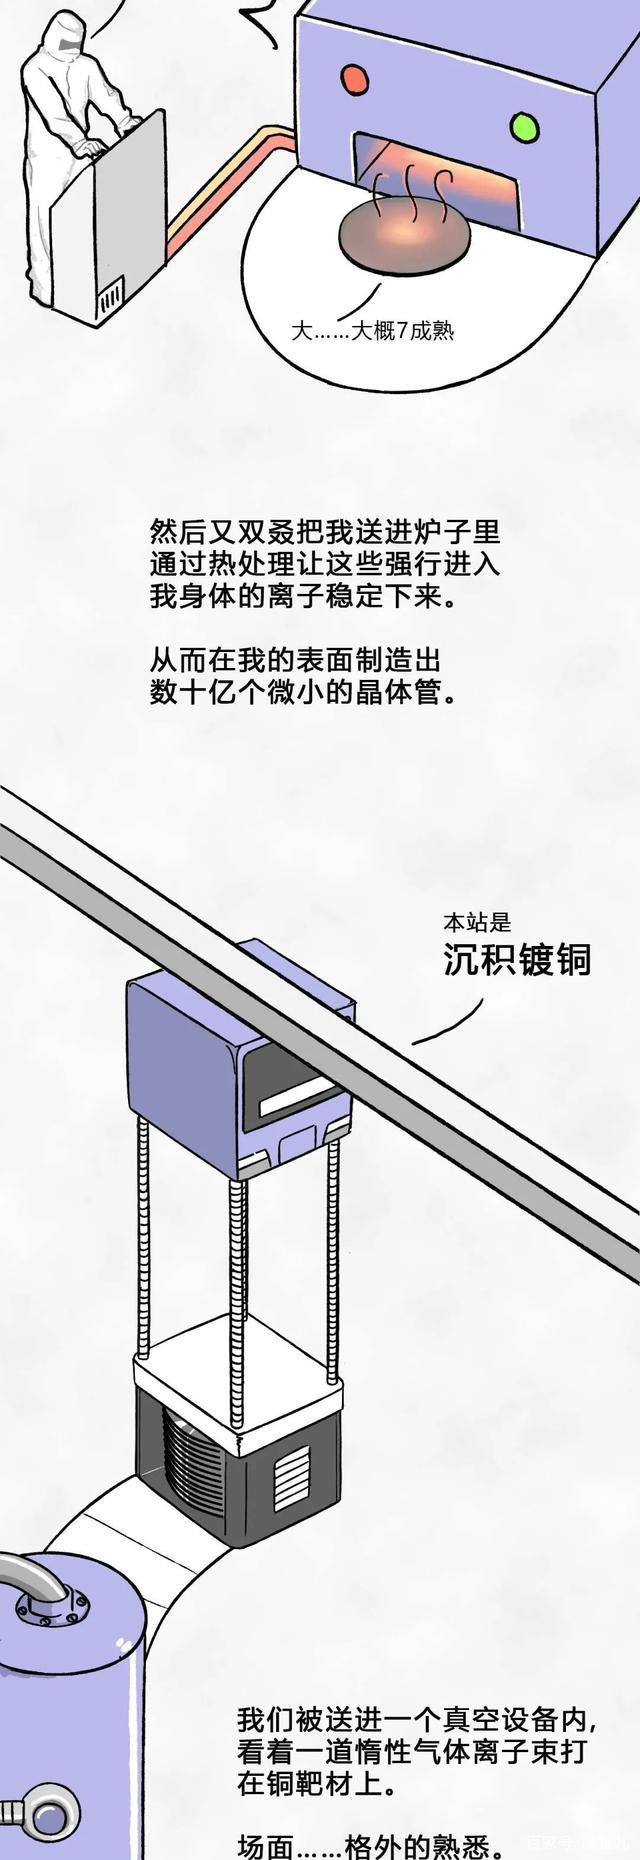 国内芯片技术交流-一粒沙子变成芯片的全过程risc-v单片机中文社区(21)